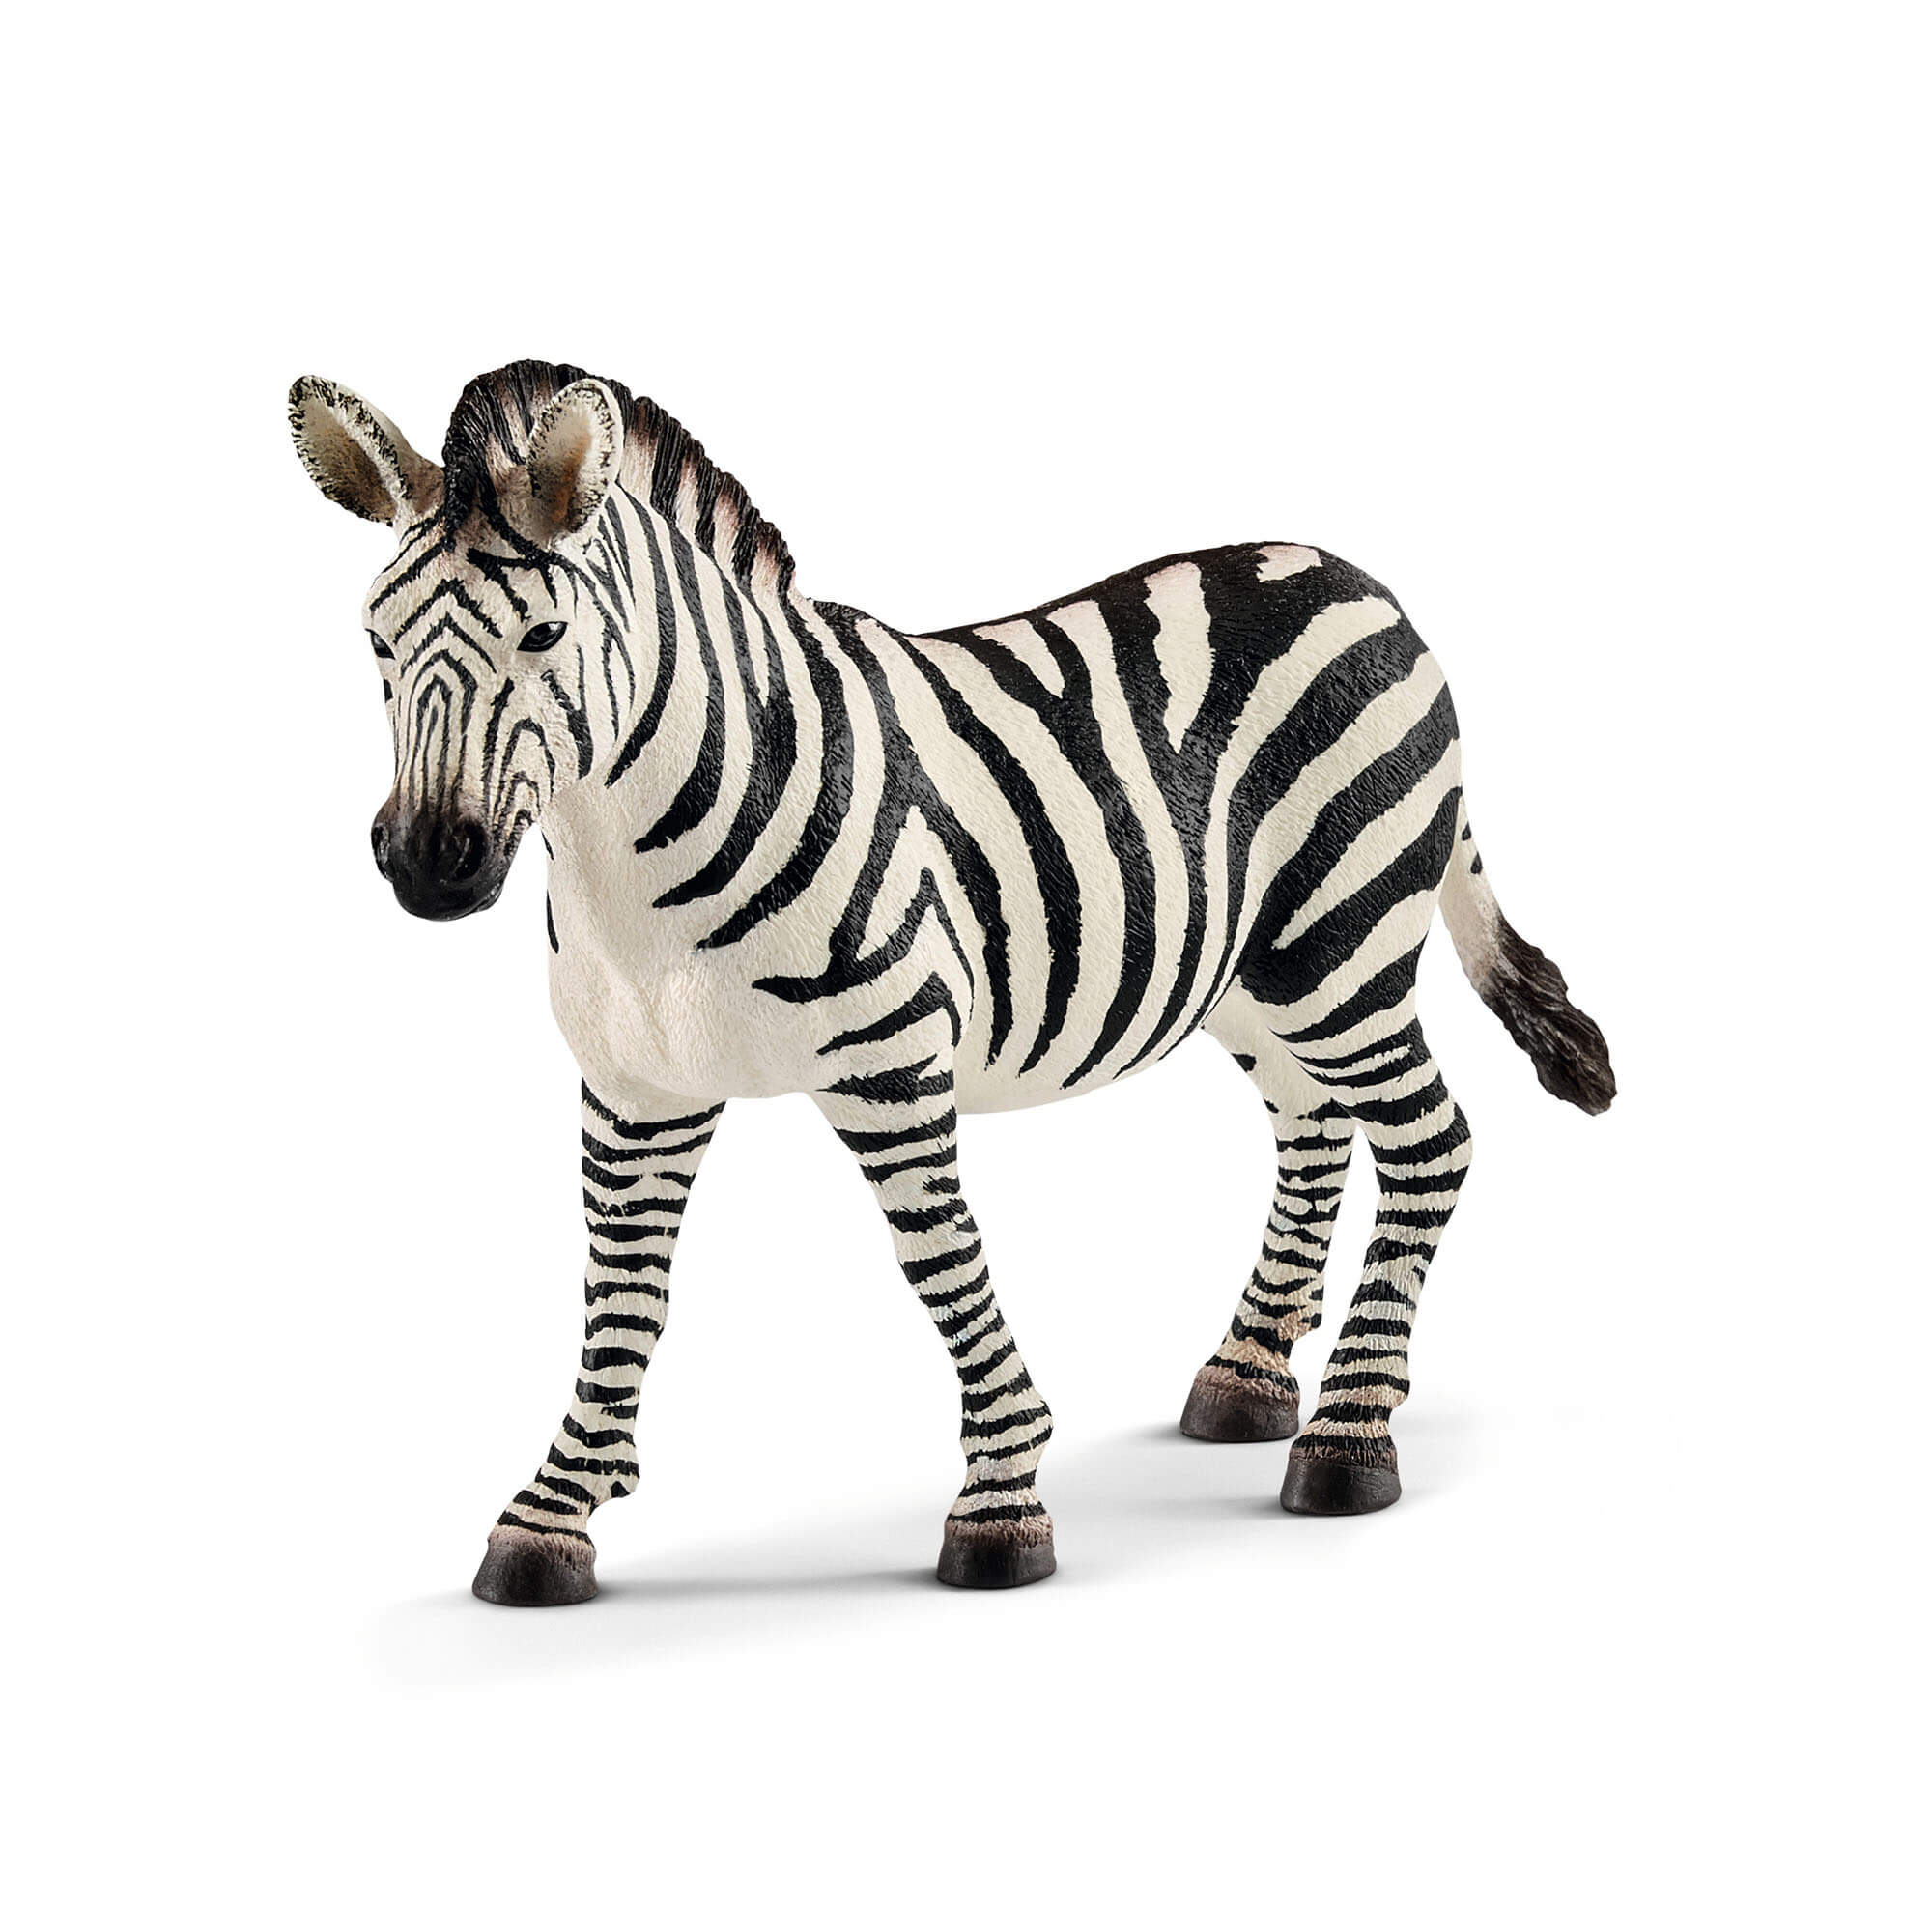 Schleich Wild Life Female Zebra Animal Figure